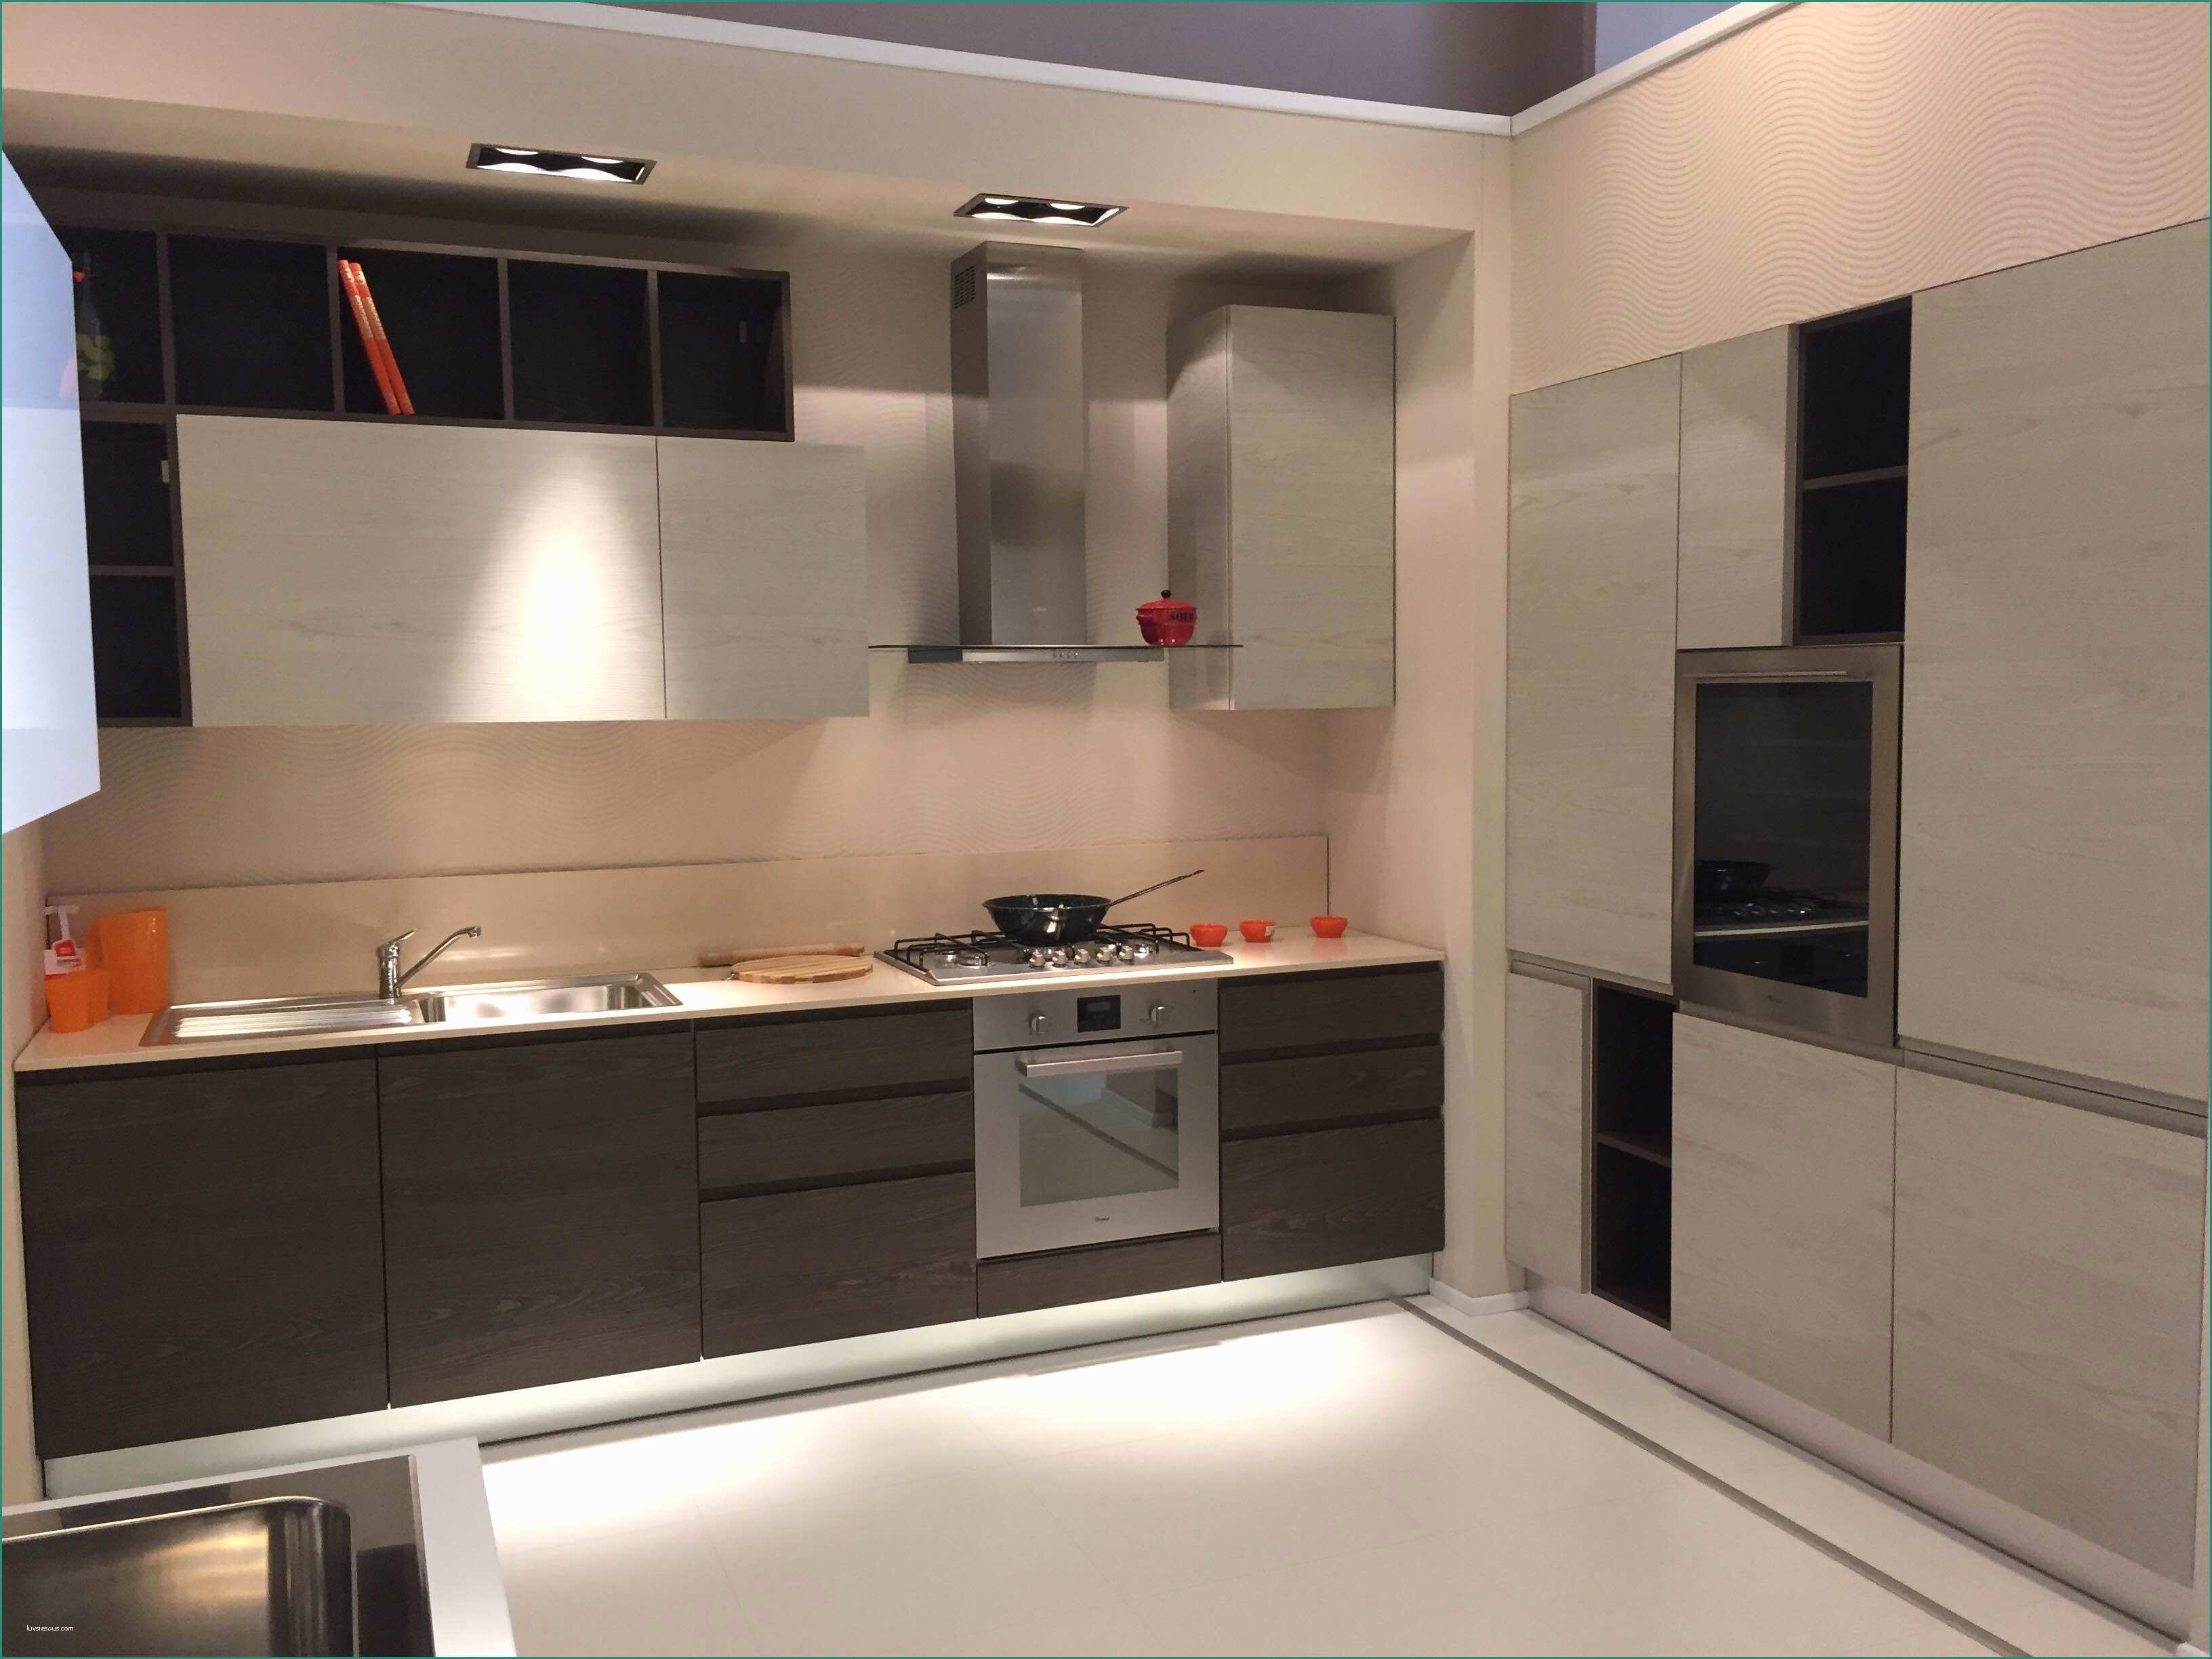 Cucine Moderne Berloni E Cucine Arrex Qualit Idee Di Design Per La Casa Rustify